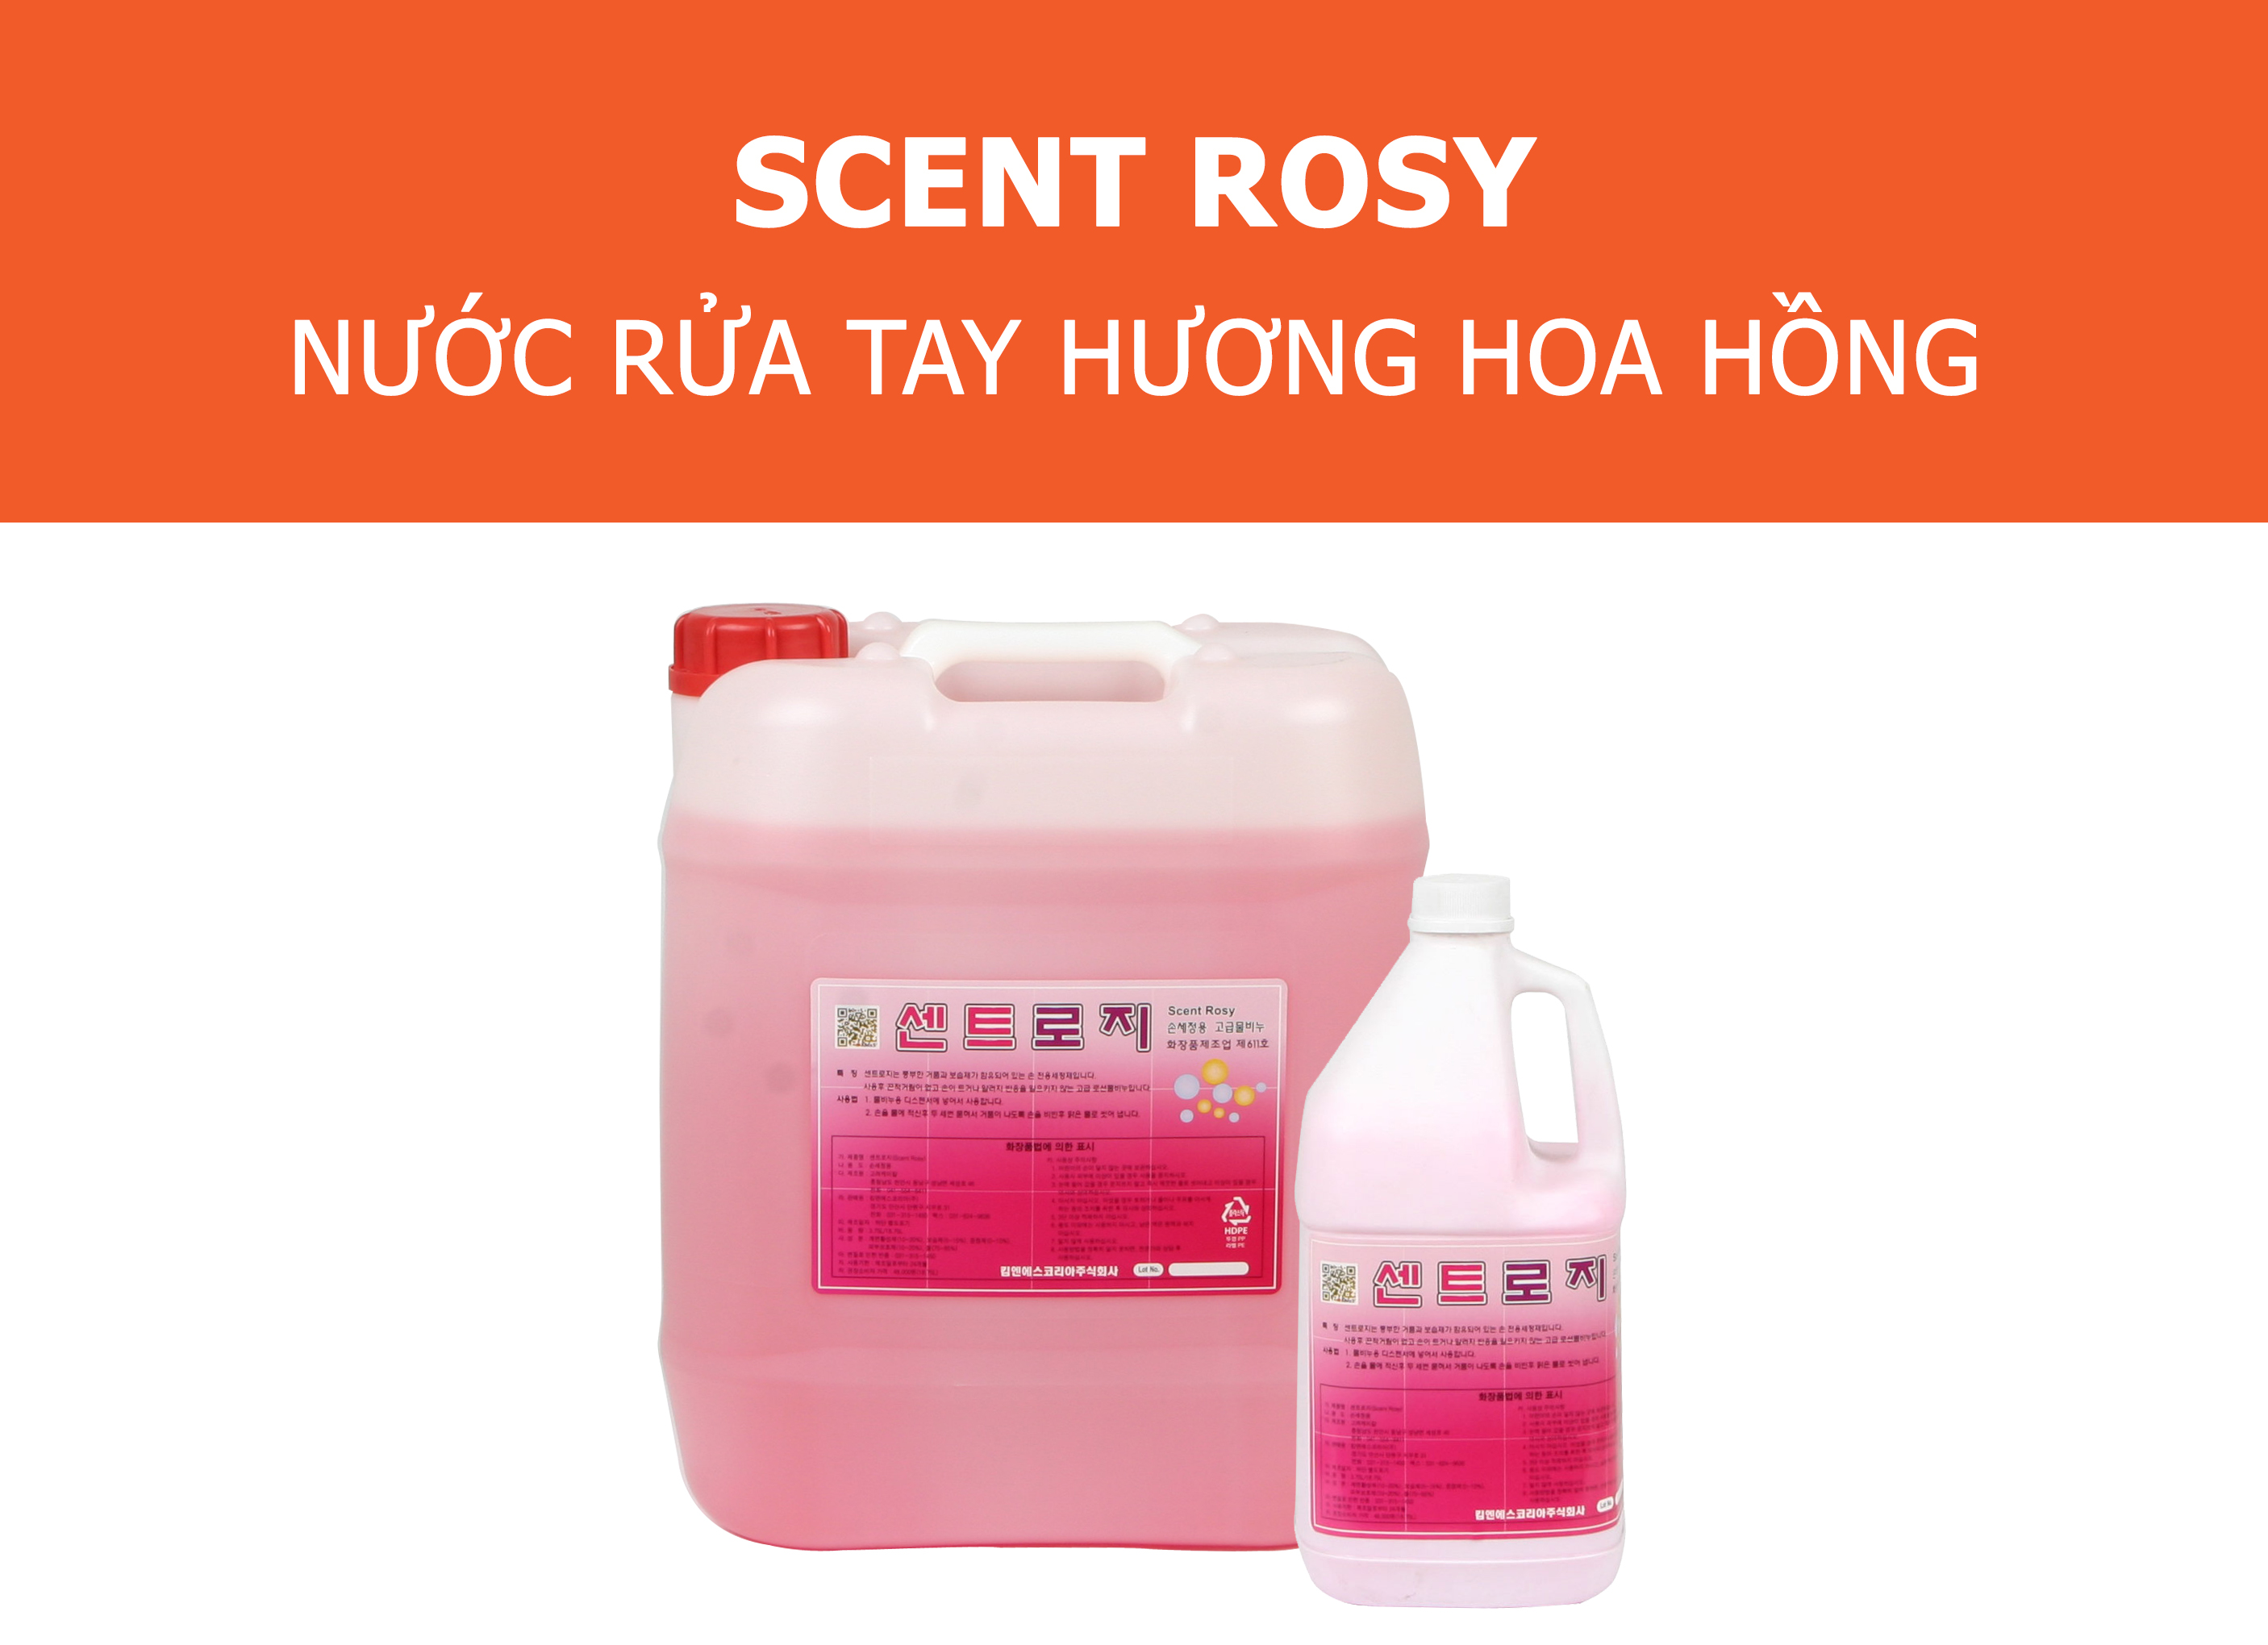 Scent Rosy Nước rửa tay hương hoa hồng